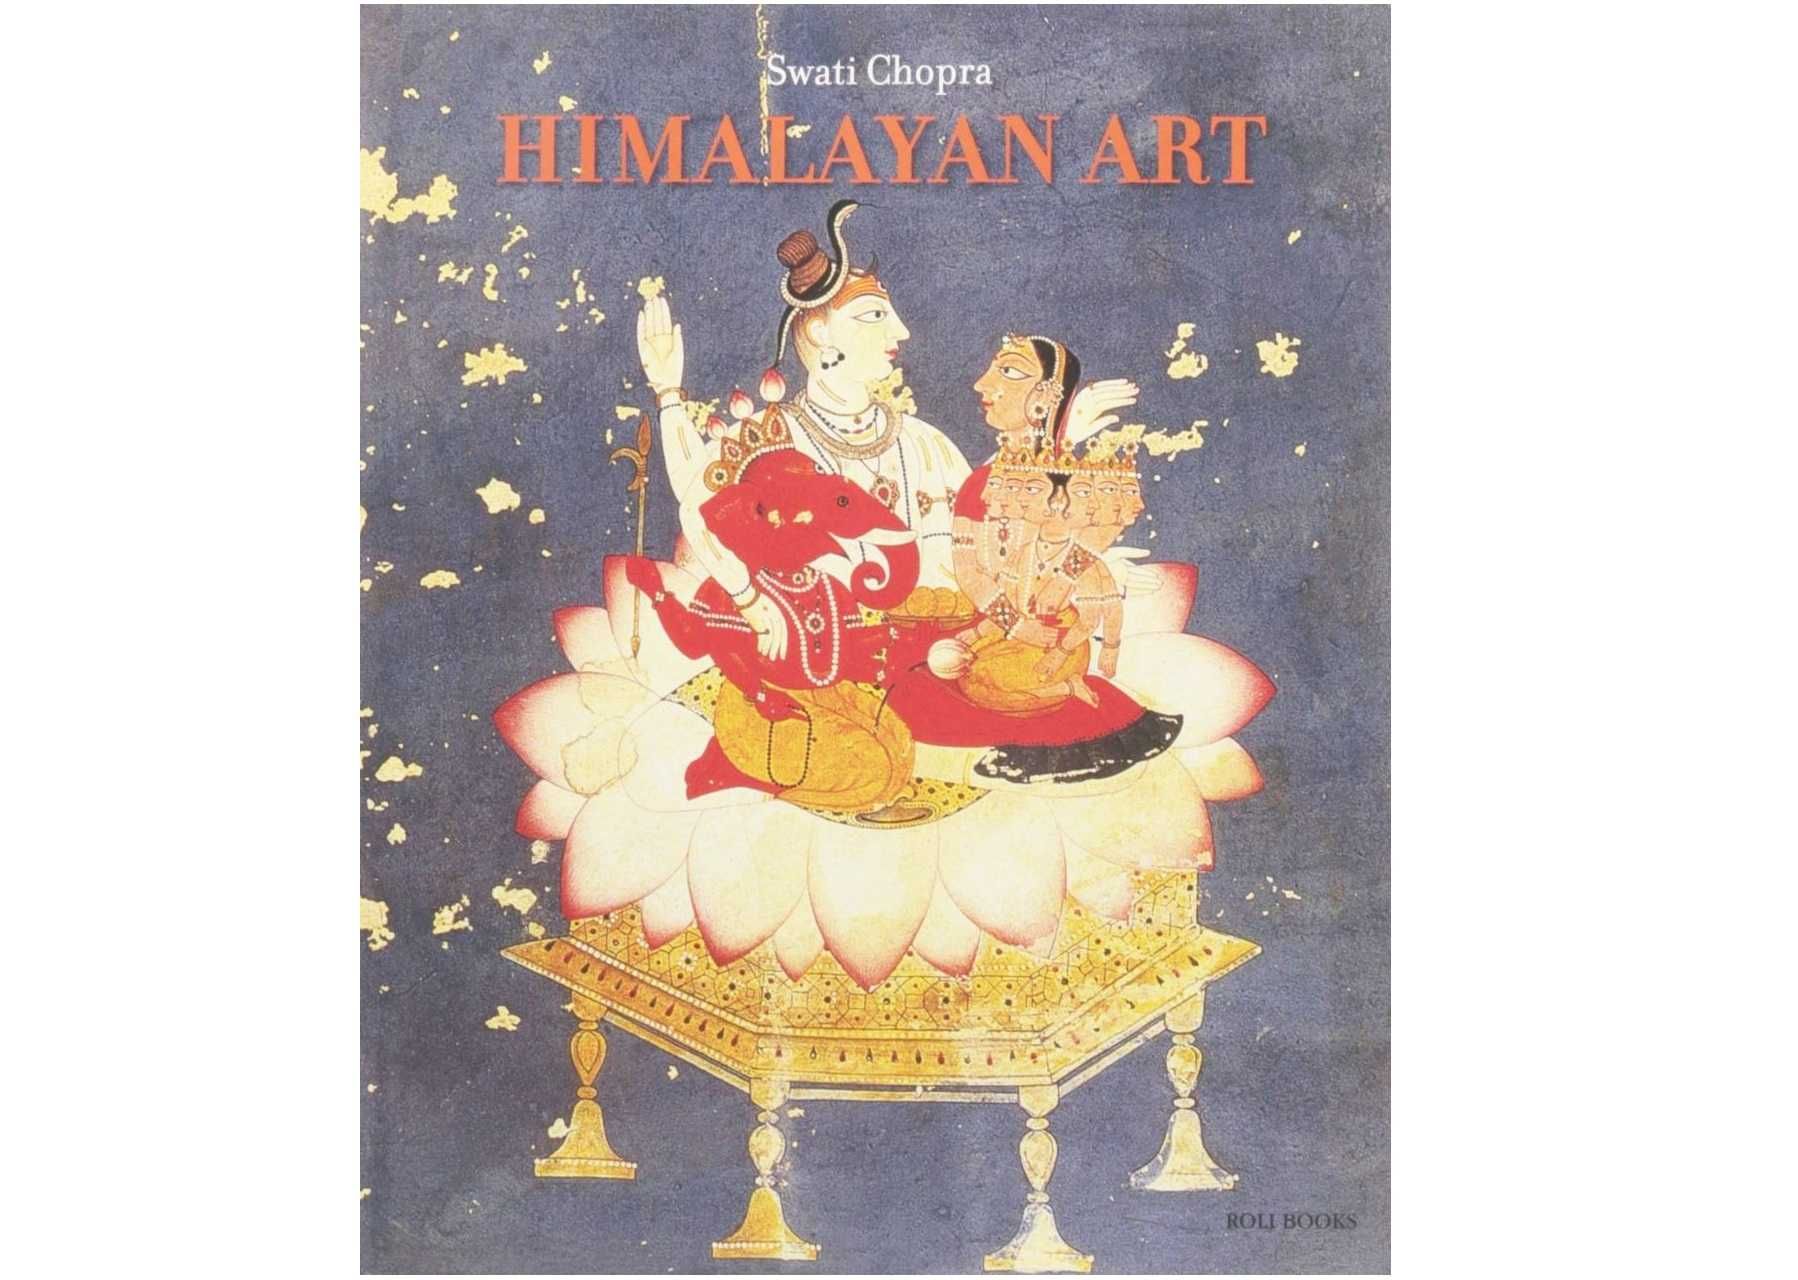 Carte album de arta splendid arta din Himalaia Tibet Nepal India Asia